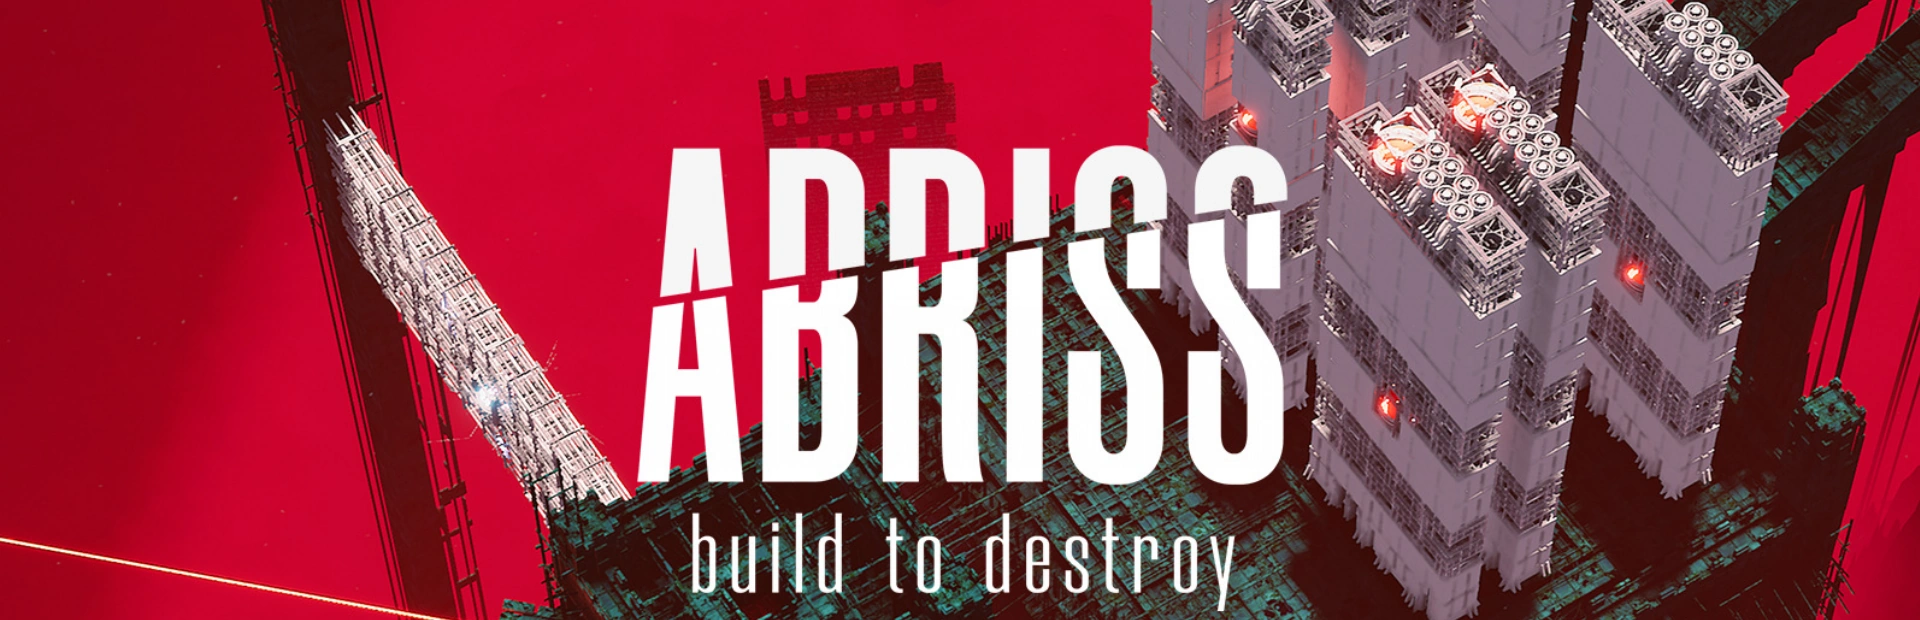 دانلود بازی ABRISS-build to destroy برای کامپیوتر | گیمباتو